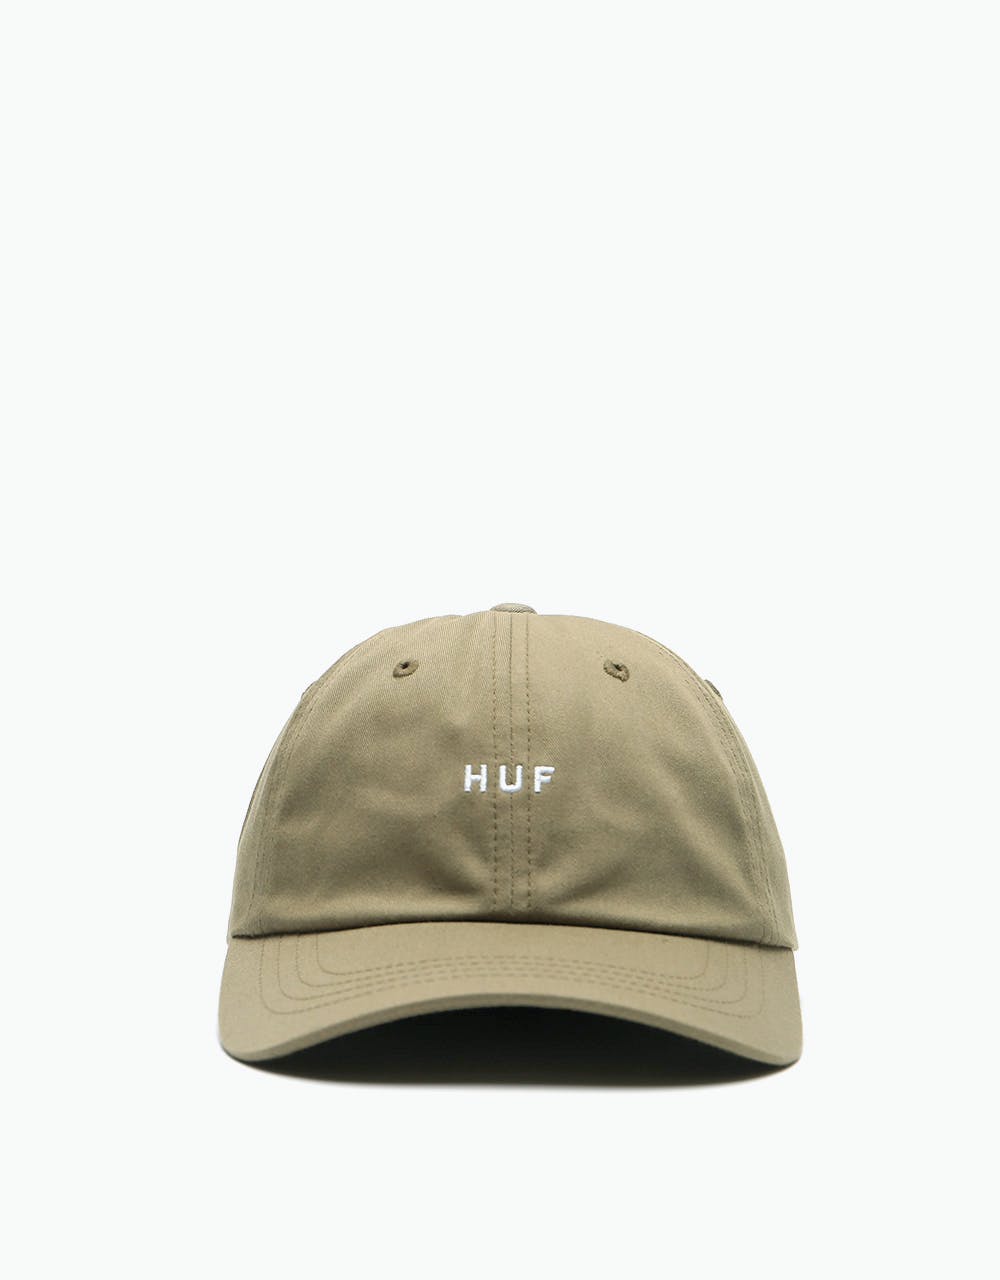 HUF OG Logo Curved Visor Cap - Drab Olive